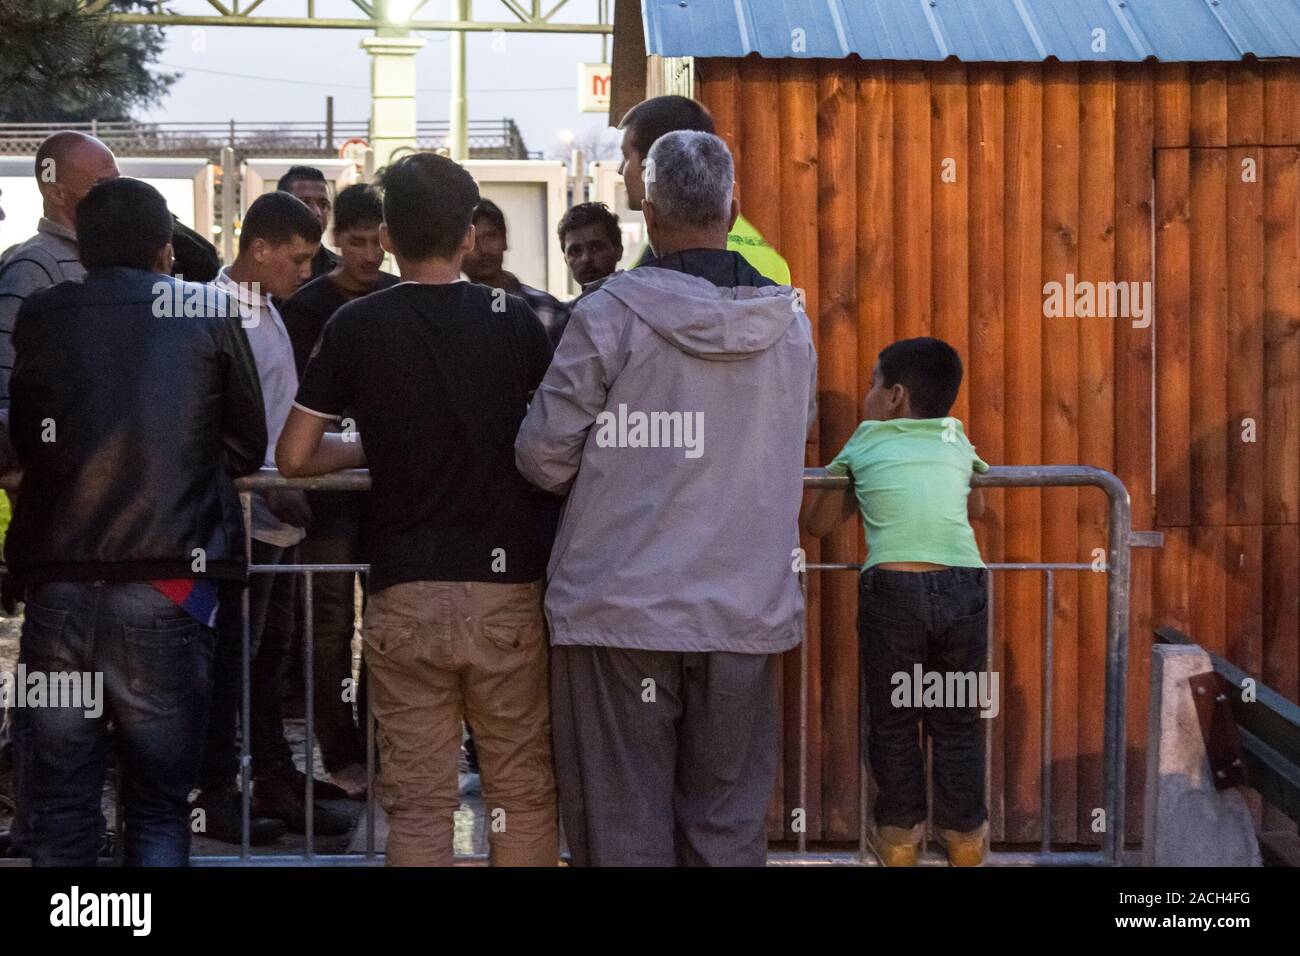 Belgrado, Serbia - Aprile 4, 2016: i rifugiati dalla Siria e Afghanistan, vecchi e giovani uomini e bambini, in attesa degli aiuti e il cibo in un rifugio gestito da volontari Foto Stock